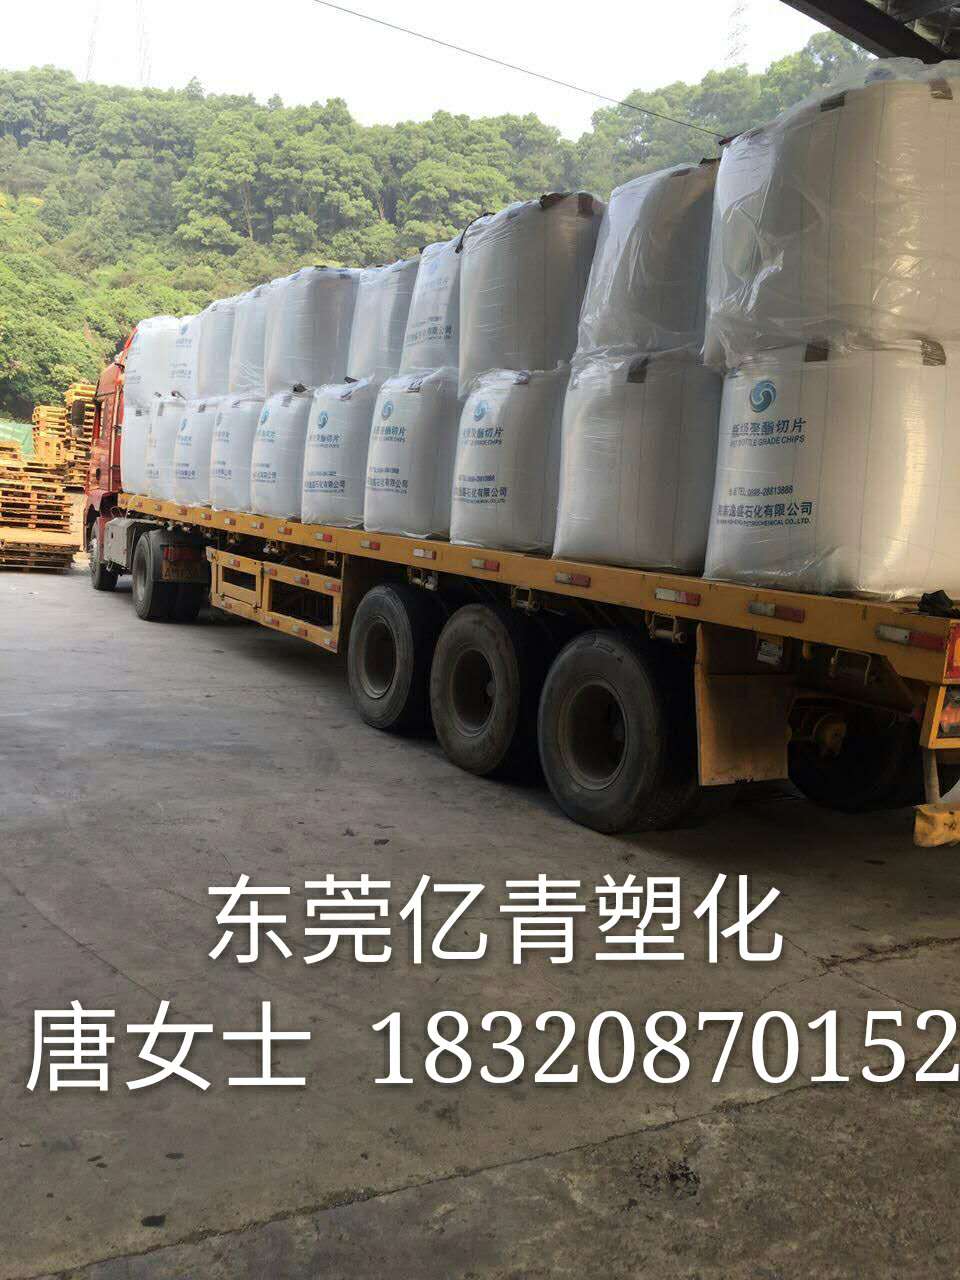 广州泛亚水瓶料FY1002粘度0.80/饮用水瓶中空瓶容器瓶胚料/注塑拉丝级原料